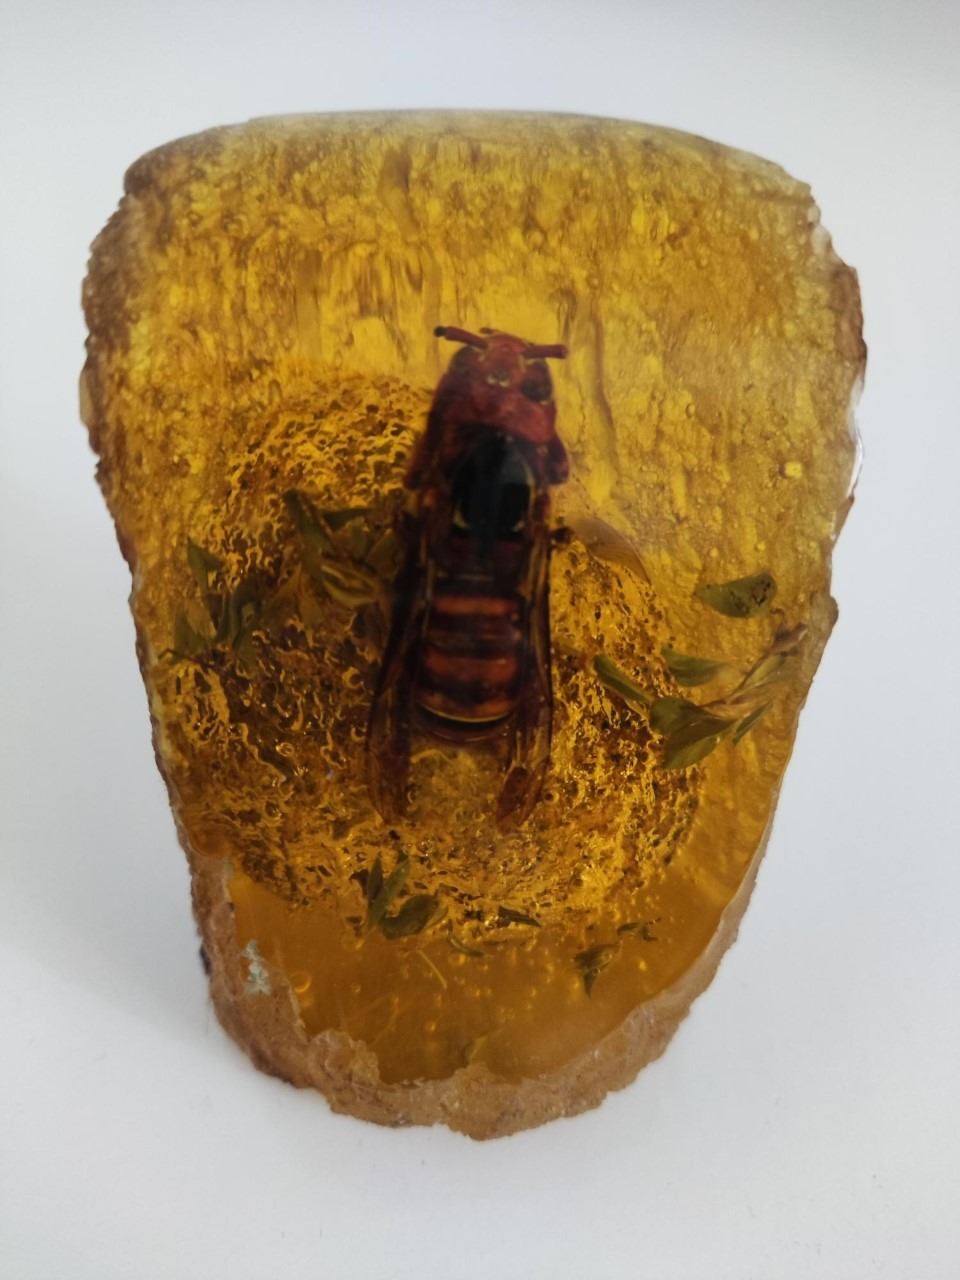 A hornet in resin block.